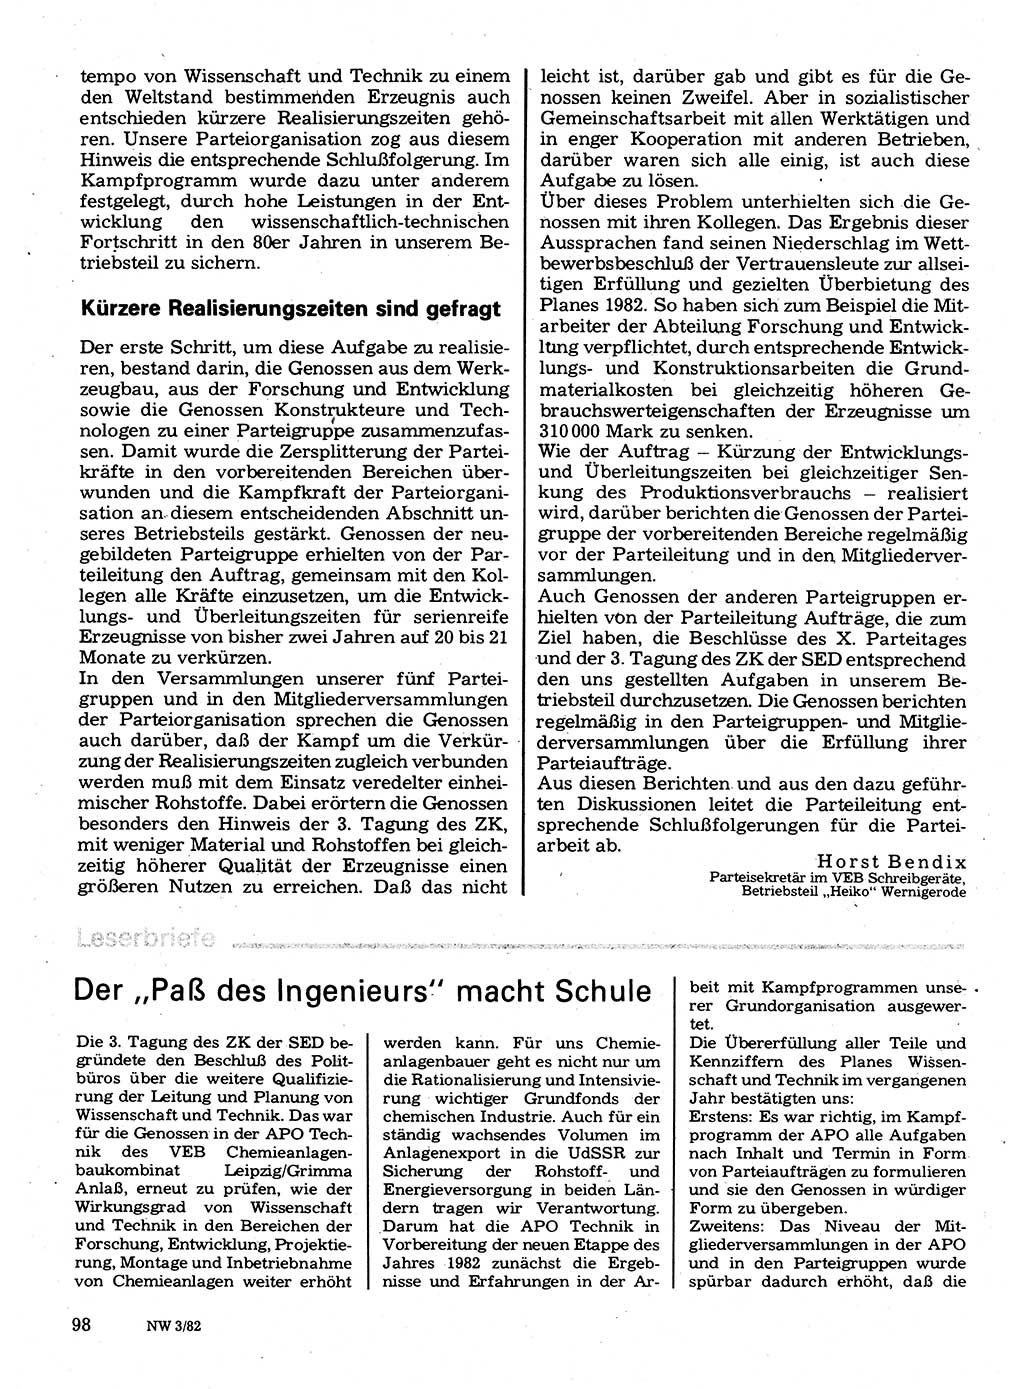 Neuer Weg (NW), Organ des Zentralkomitees (ZK) der SED (Sozialistische Einheitspartei Deutschlands) für Fragen des Parteilebens, 37. Jahrgang [Deutsche Demokratische Republik (DDR)] 1982, Seite 98 (NW ZK SED DDR 1982, S. 98)